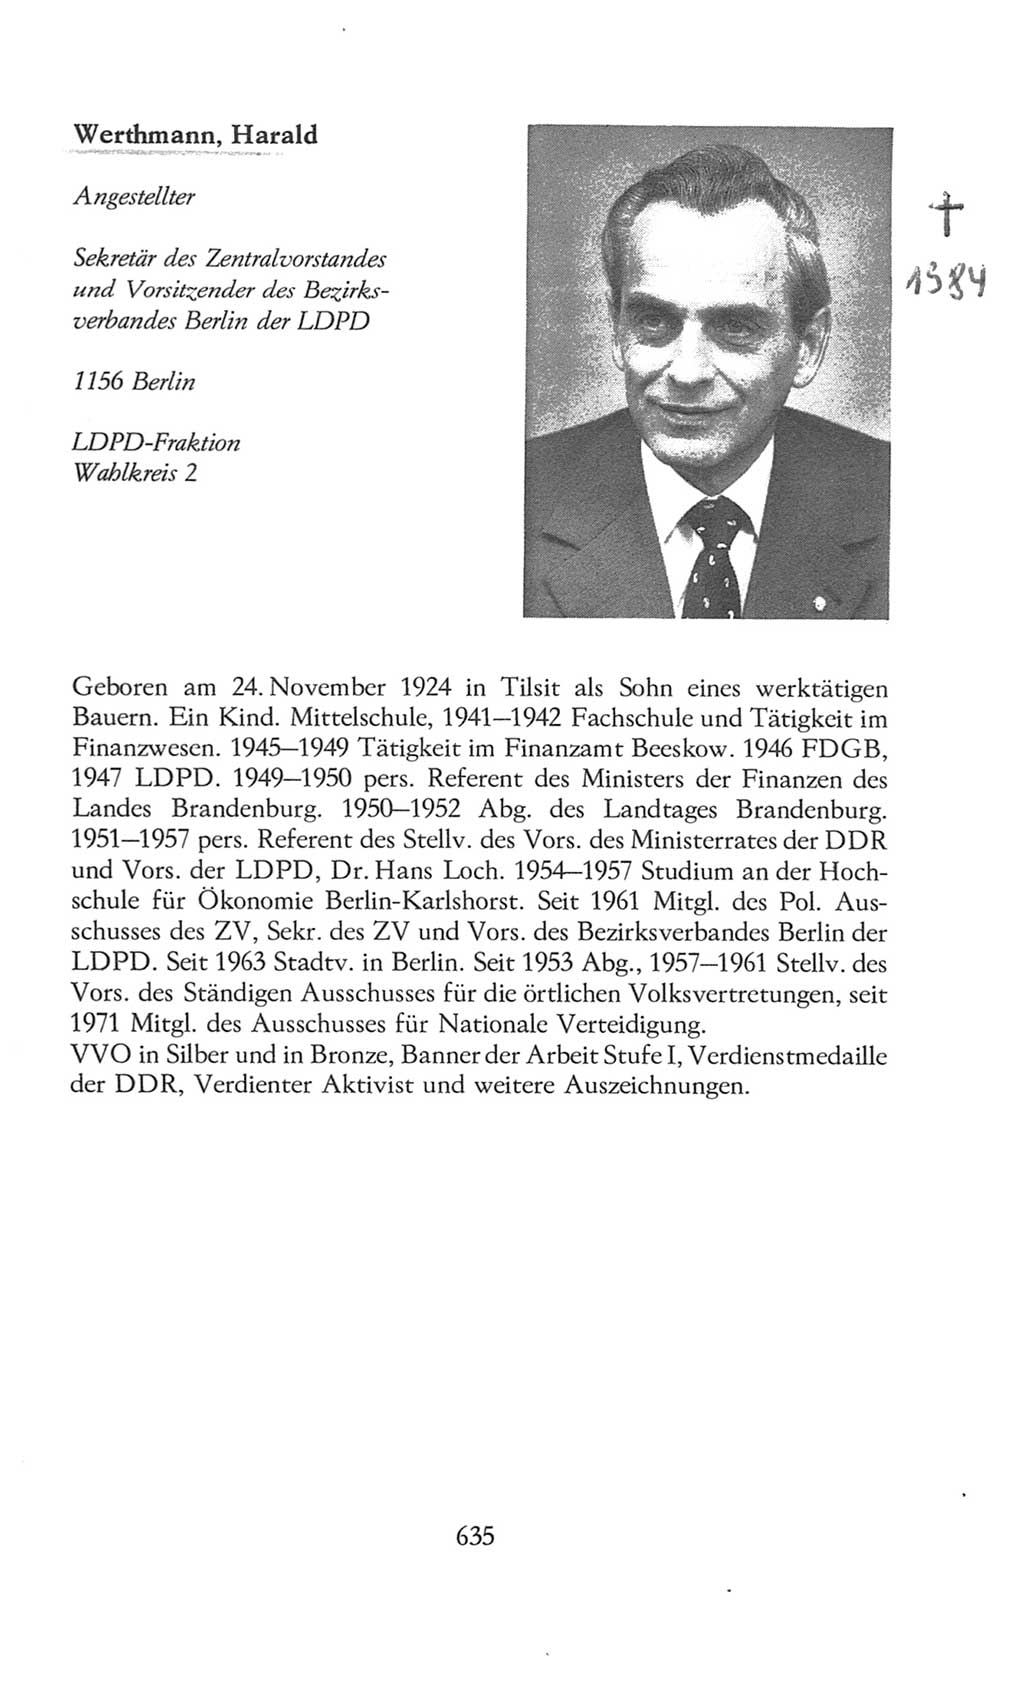 Volkskammer (VK) der Deutschen Demokratischen Republik (DDR), 8. Wahlperiode 1981-1986, Seite 635 (VK. DDR 8. WP. 1981-1986, S. 635)